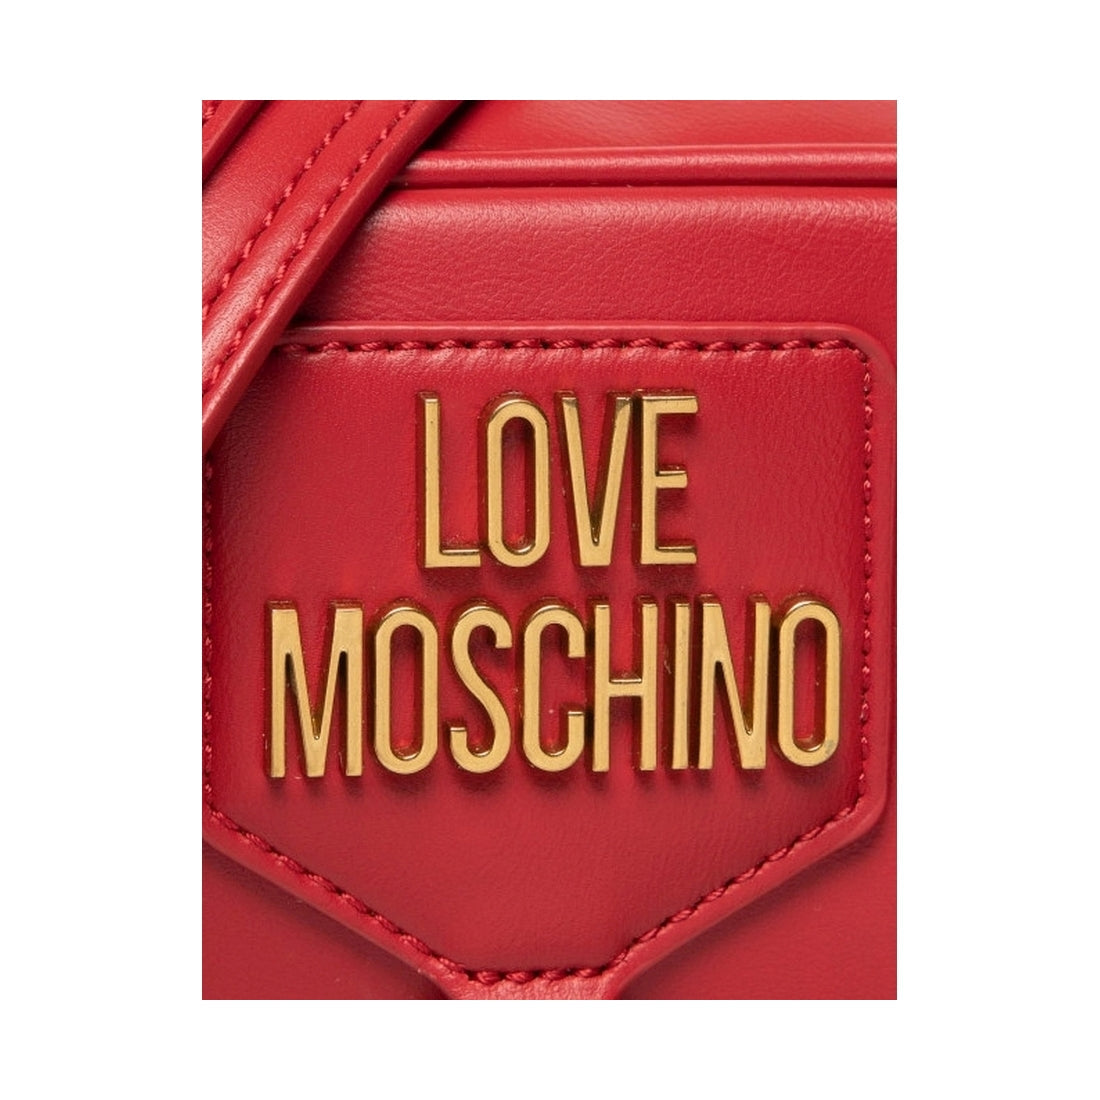 Love Moschino Womens rosso bag | Vilbury London